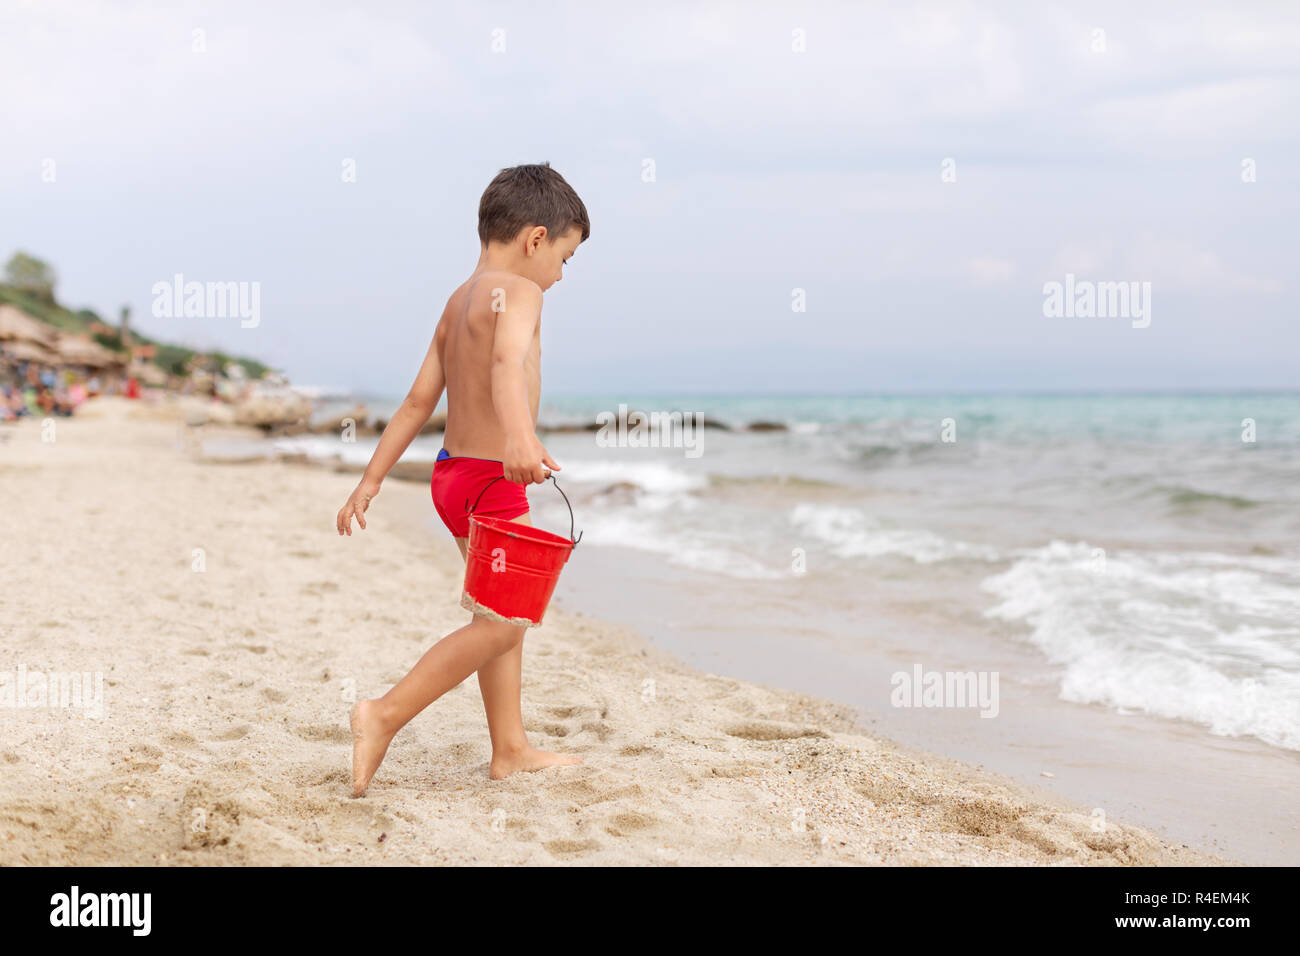 Ragazzo sulla spiaggia a piedi al mare portante una benna, Grecia Foto Stock